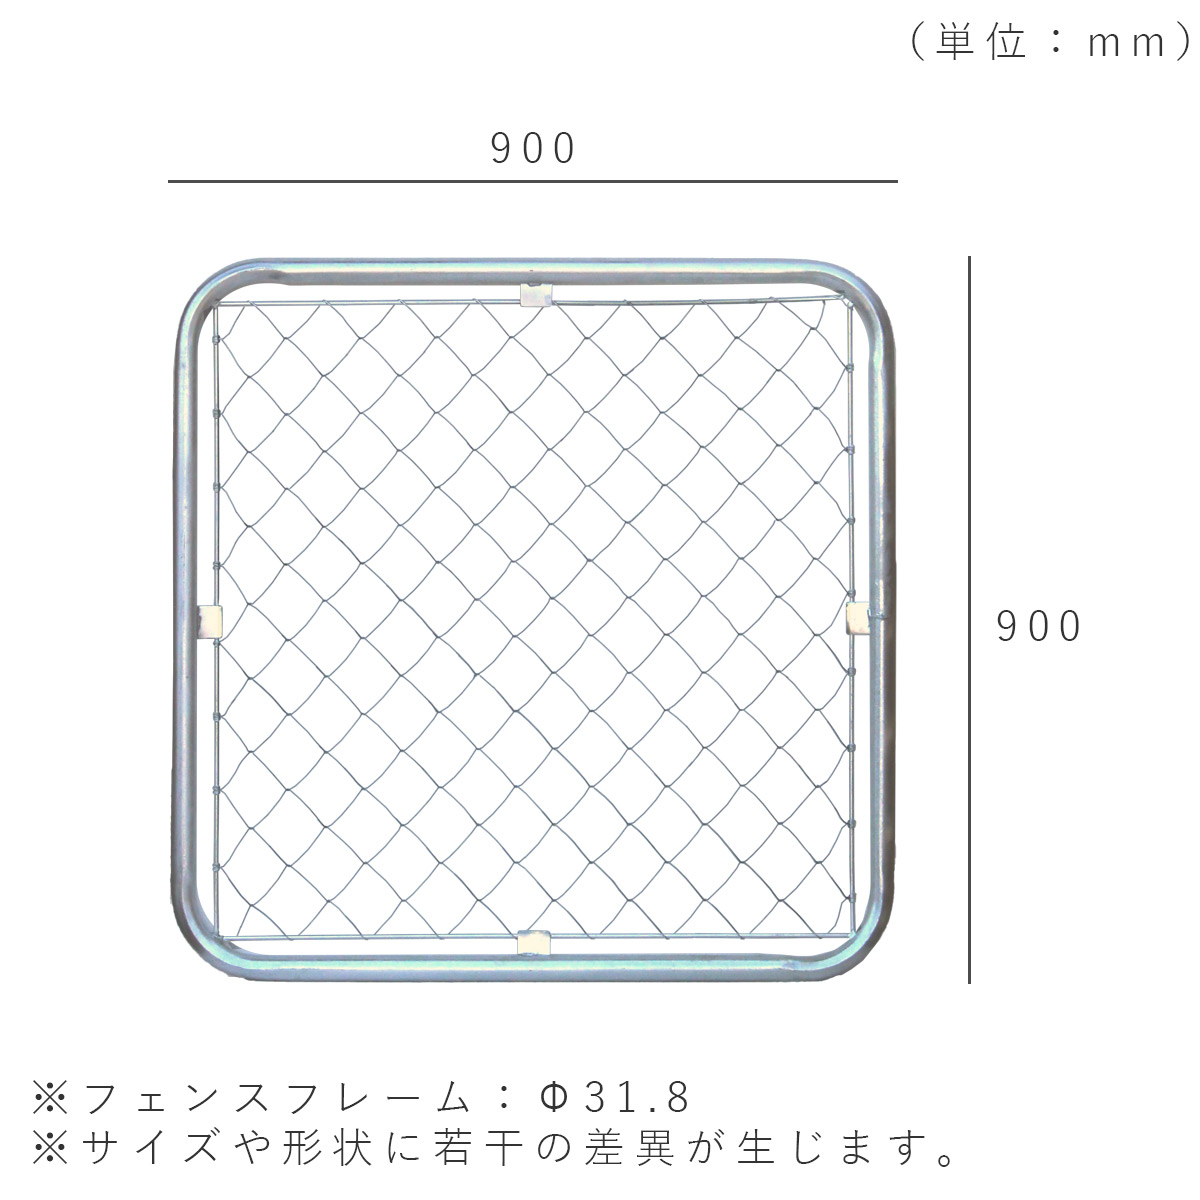 フェンスを設置した際の寸法図。900×900mm、フェンスフレームはΦ31.8mm。サイズや形状に若干の差異が生じます。